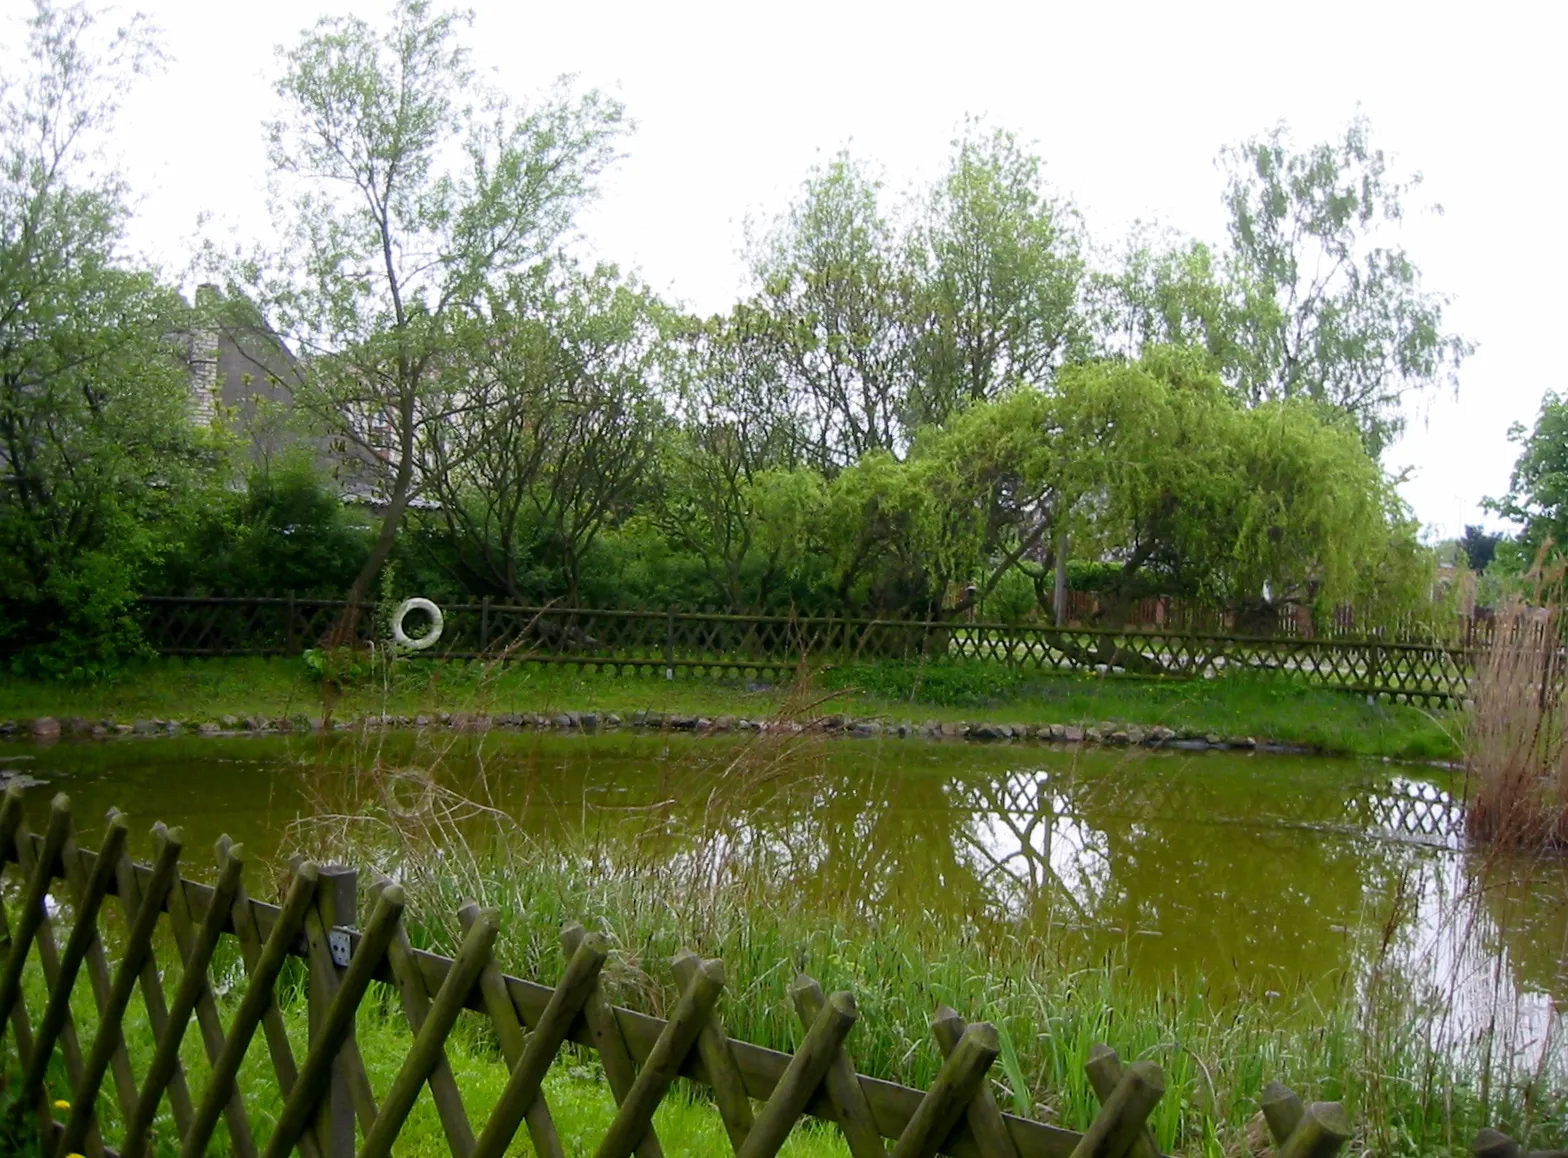 Photo showing: Teich der Adonisquelle von Roland Rother in Mallnow, einem Ortsteil von Lebus in Märkisch-Oderland (Brandenburg). Das Kunstwerk ist auf einem verfallenen Parkgelände entstanden und symbolisiert die Region, die eiszeitlich geformt wurde. Die Namensgebung erinnert an die Adonisröschenblüte.